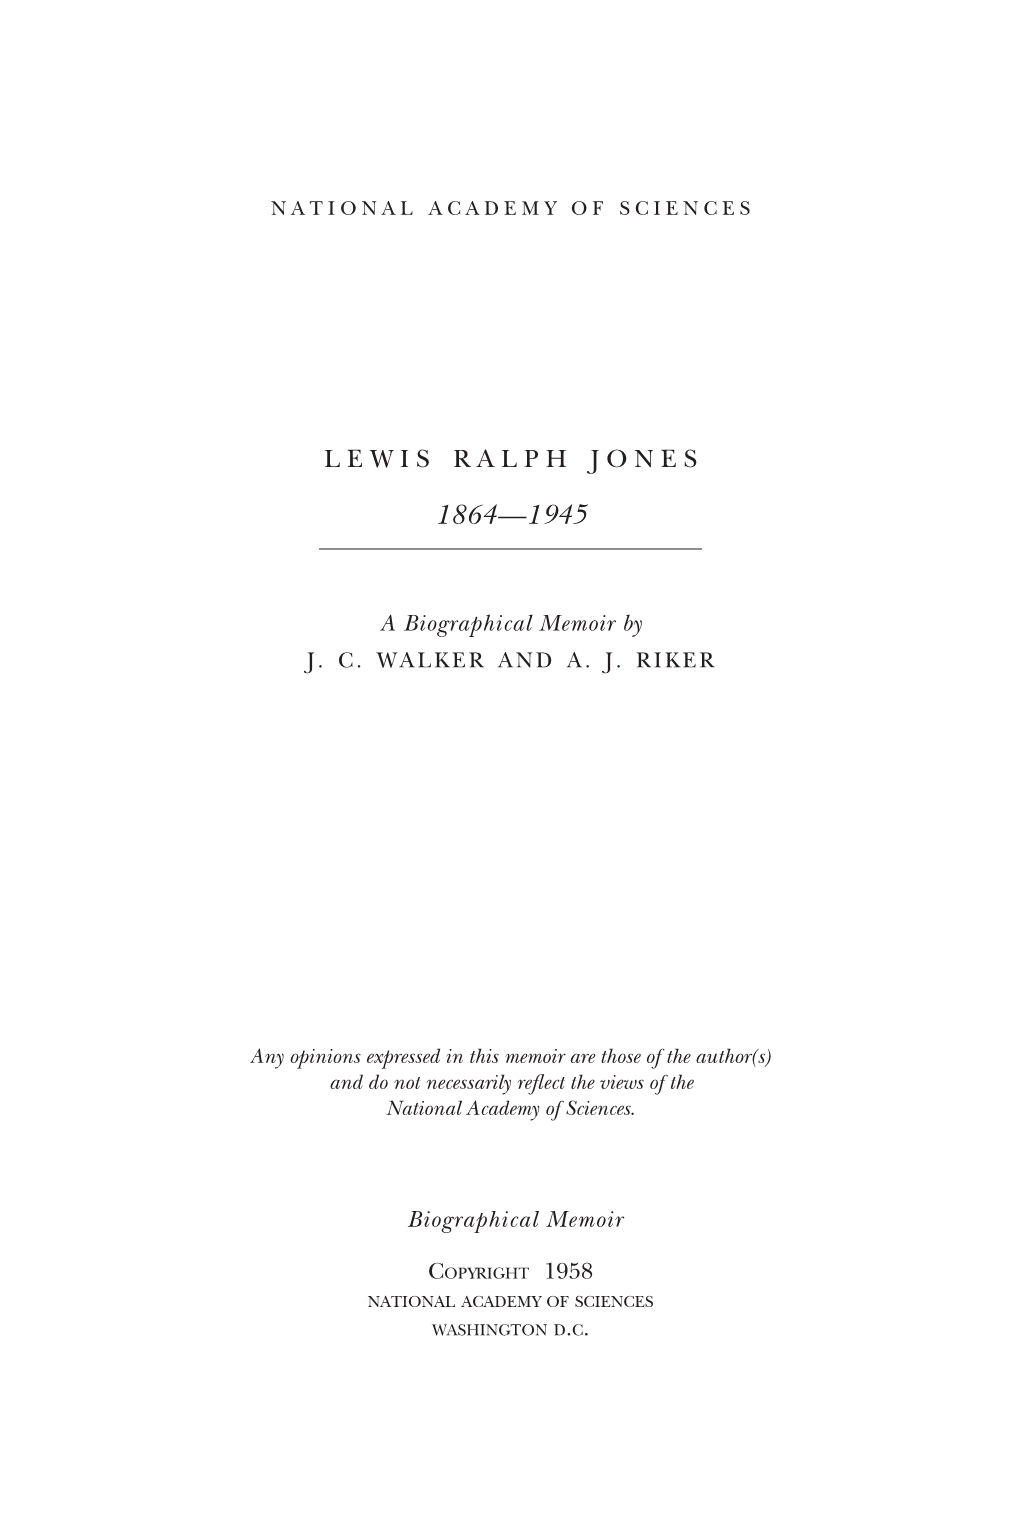 Lewis Ralph Jones